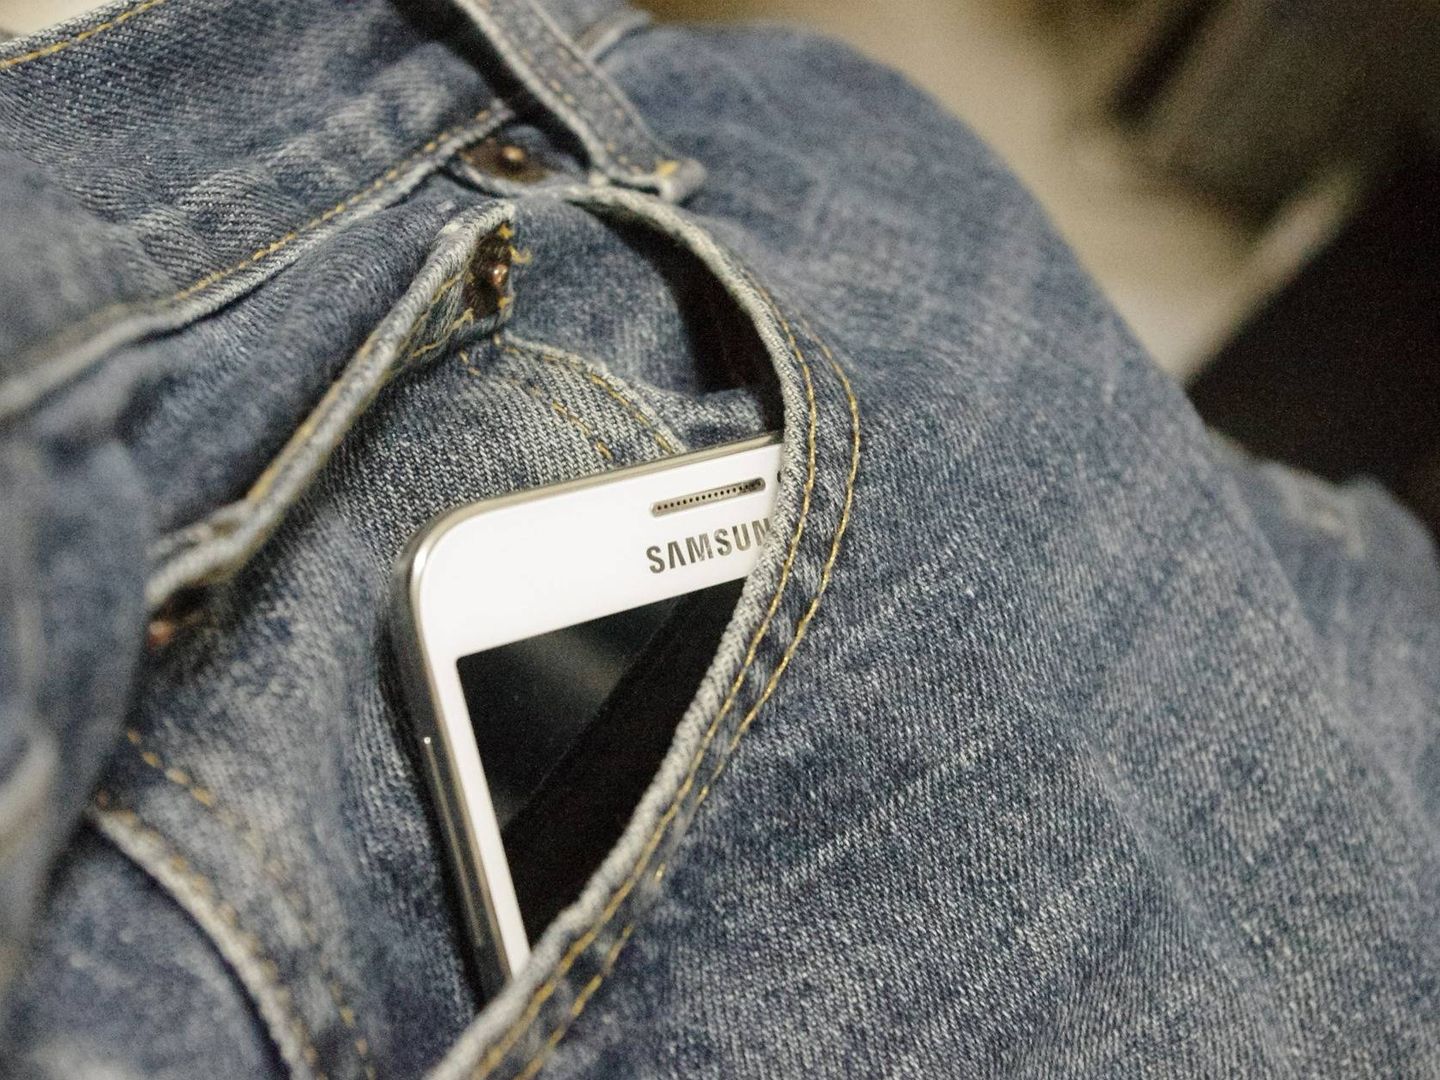 Para que la pantalla dure más en un bolsillo, hay que guardar el terminal en una funda. (Imagen: Pixabay)